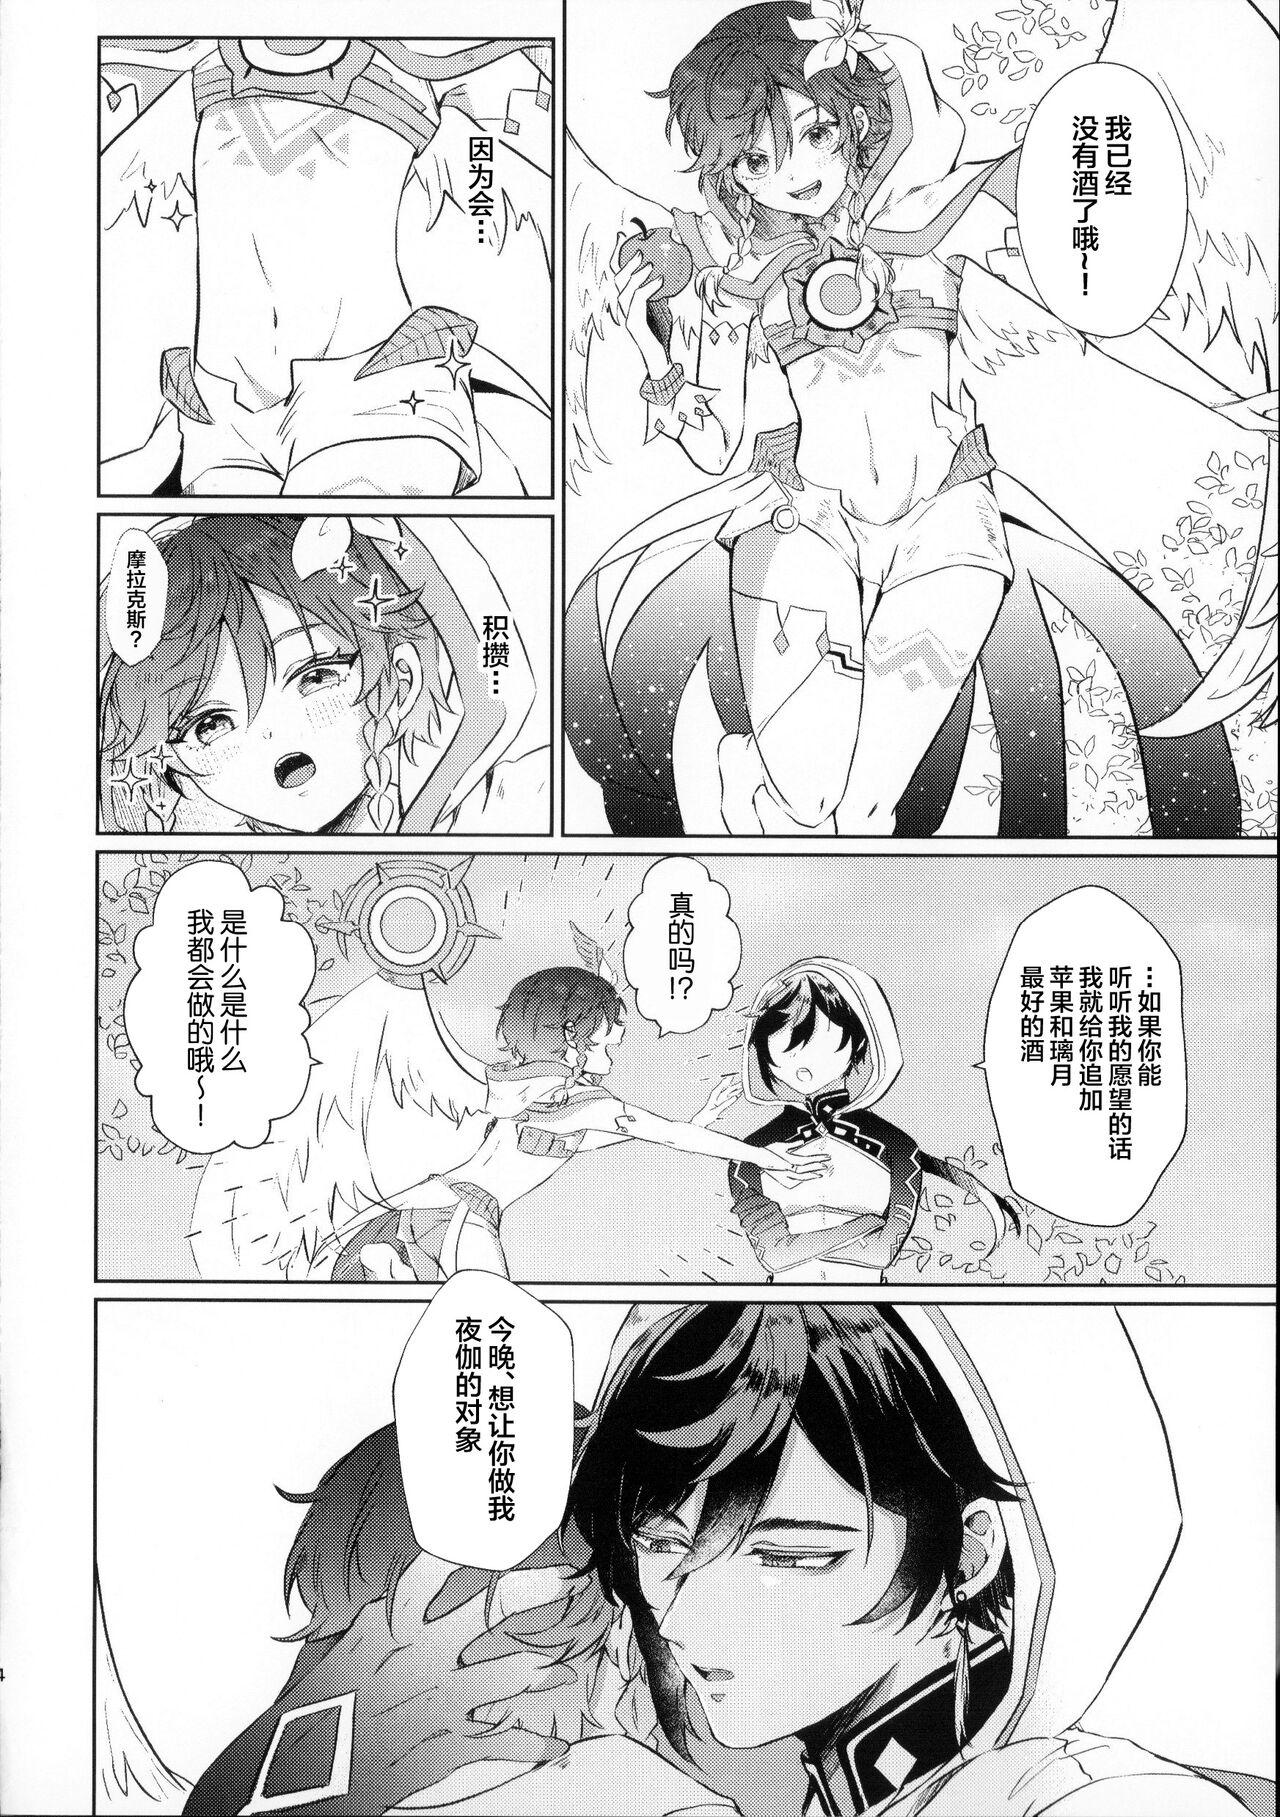 Pornstar さて、なんの音でしょう？ - Genshin impact Sexcam - Page 3